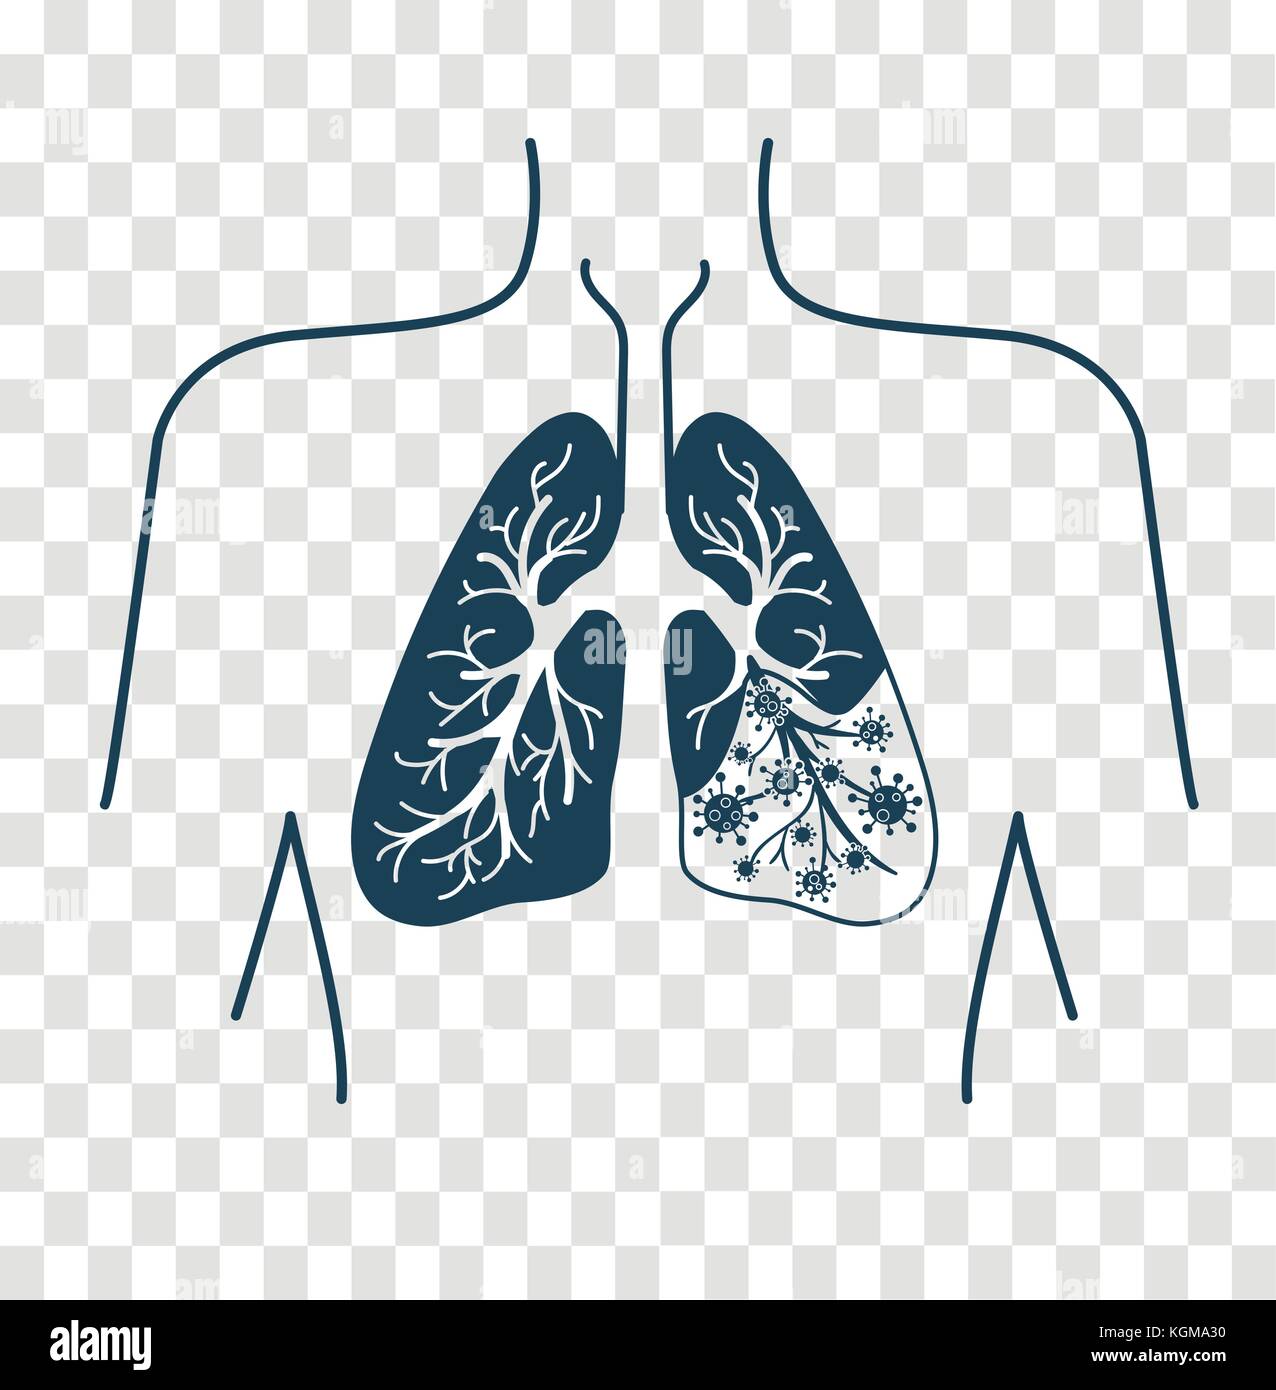 Symbol der Lungenkrankheit, Pneumonie, Asthma, Krebs in der Form von Lungenkrebs Anatomie und Viren, Bakterien, Krankheit verursachen. Symbol, Silhouette in einem linearen Stil Stock Vektor